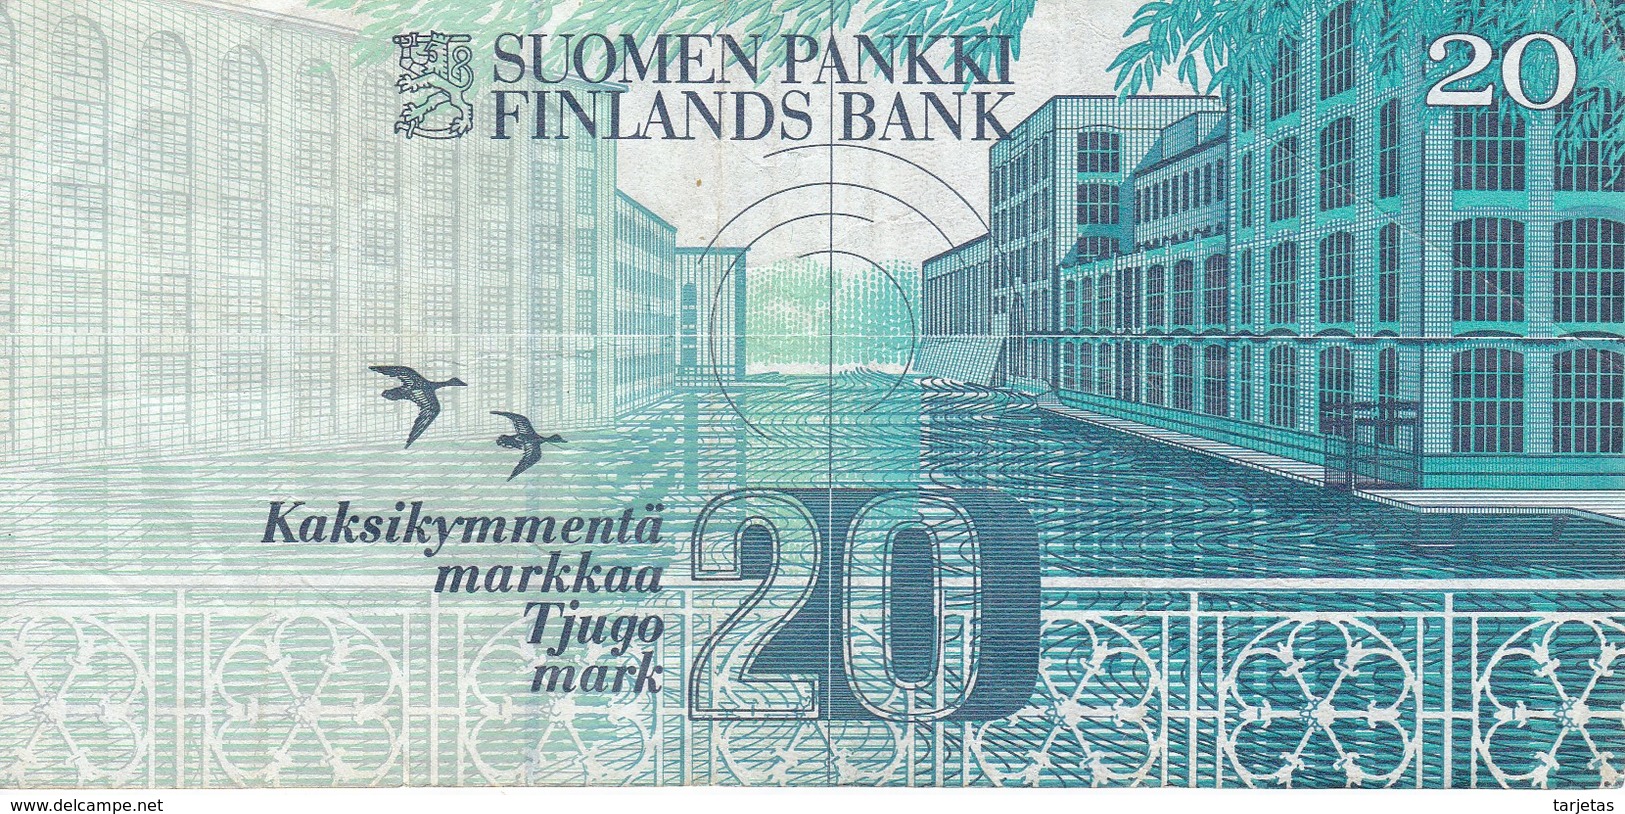 BILLETE DE FINLANDIA DE 20 MARKKAA DEL AÑO 1993  (BANKNOTE) - Finnland